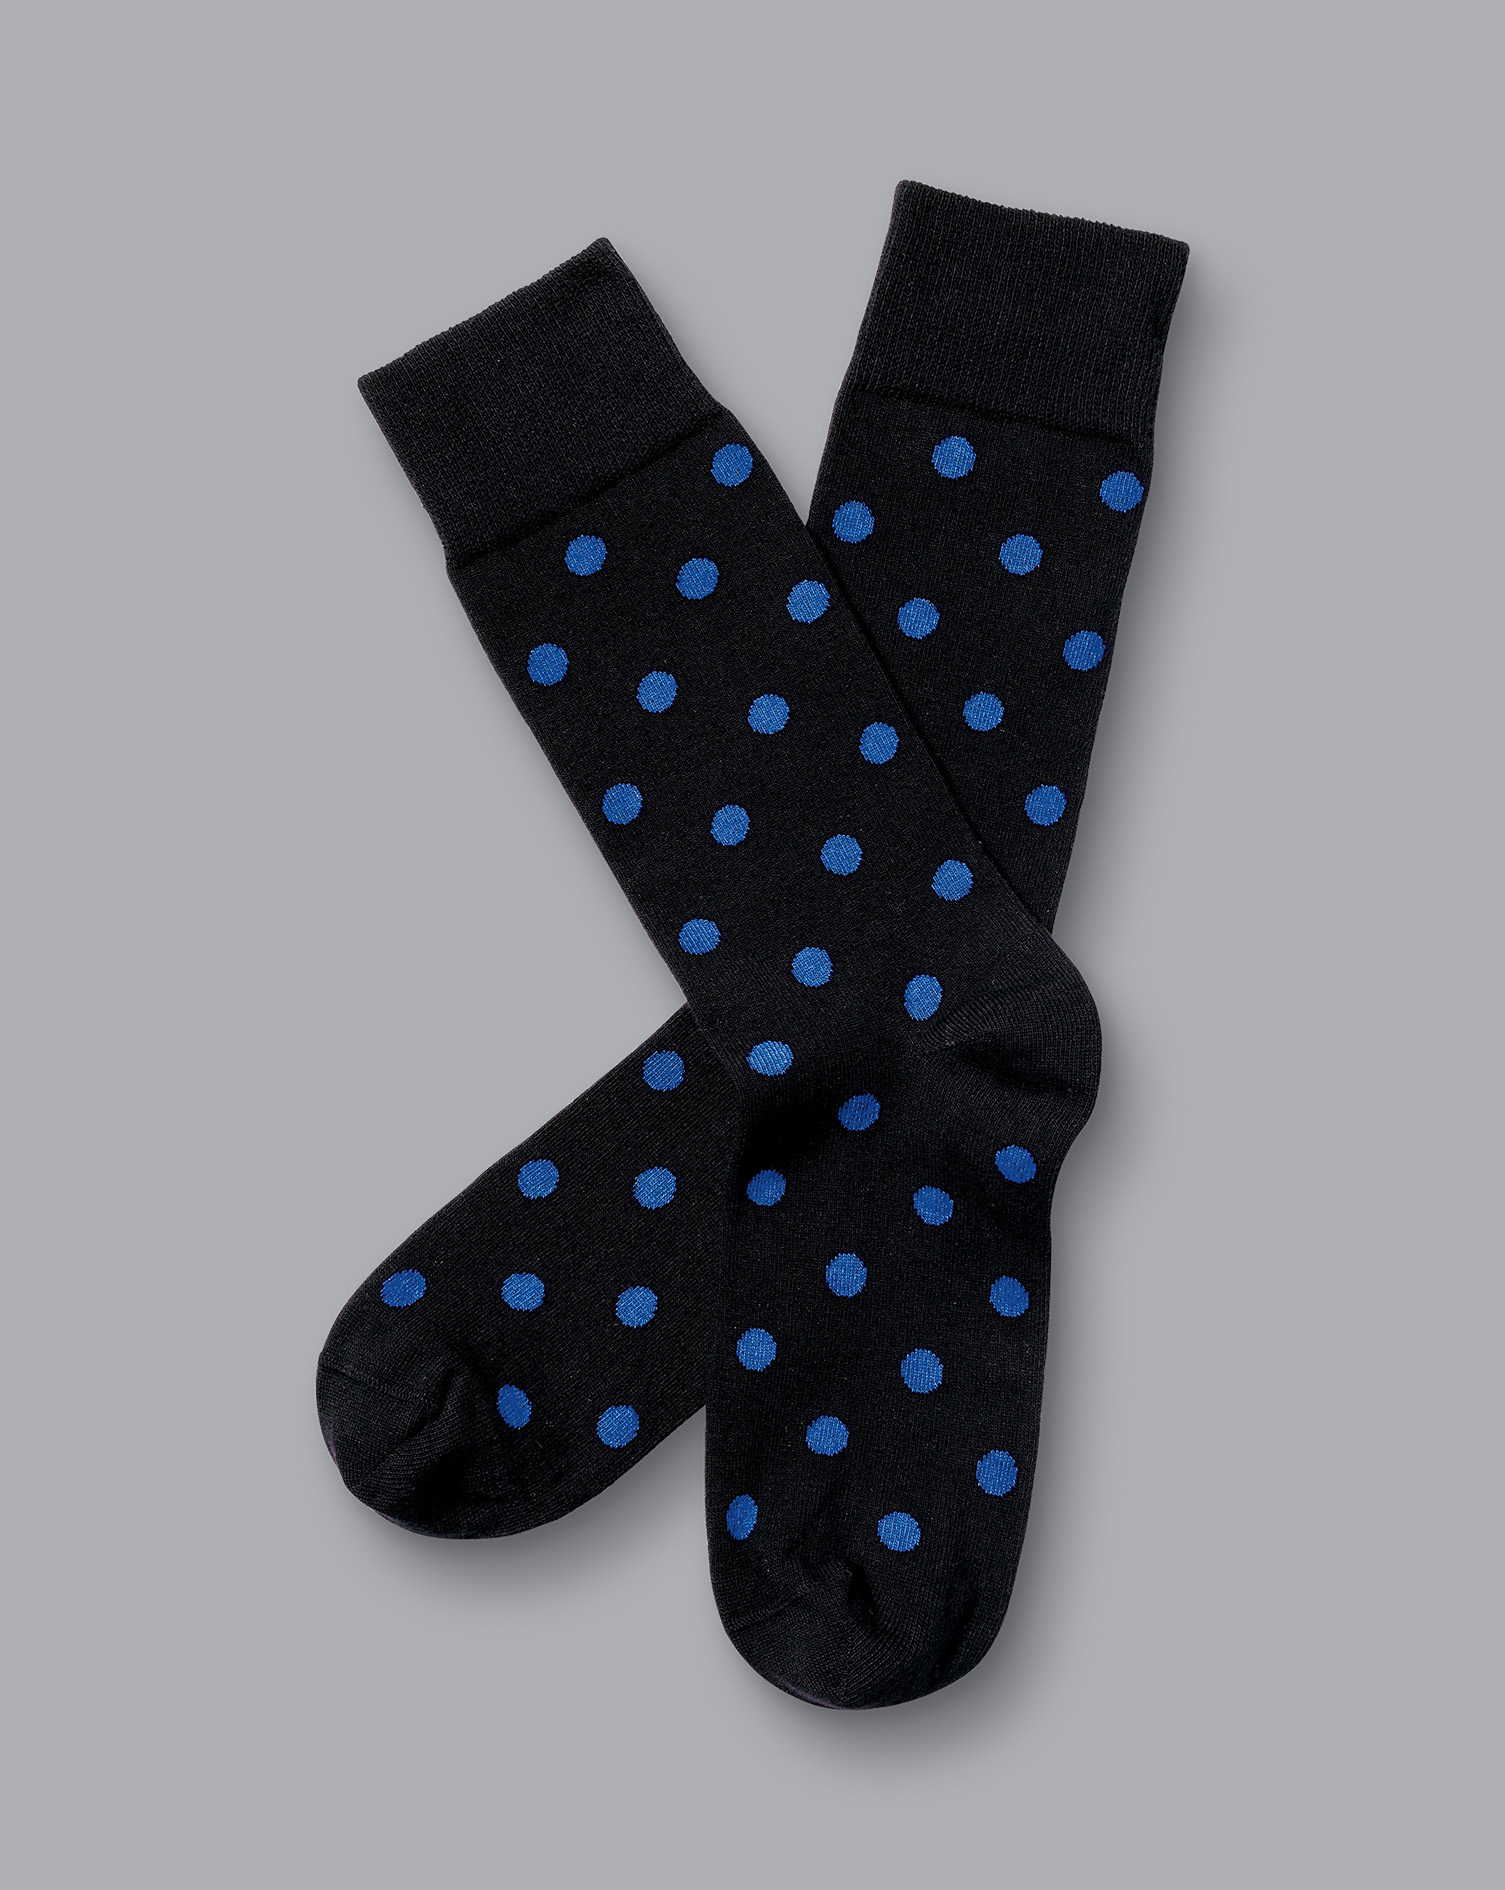 Men's Charles Tyrwhitt Spot Socks - Black & Cobalt Blue Size 10.5-13
